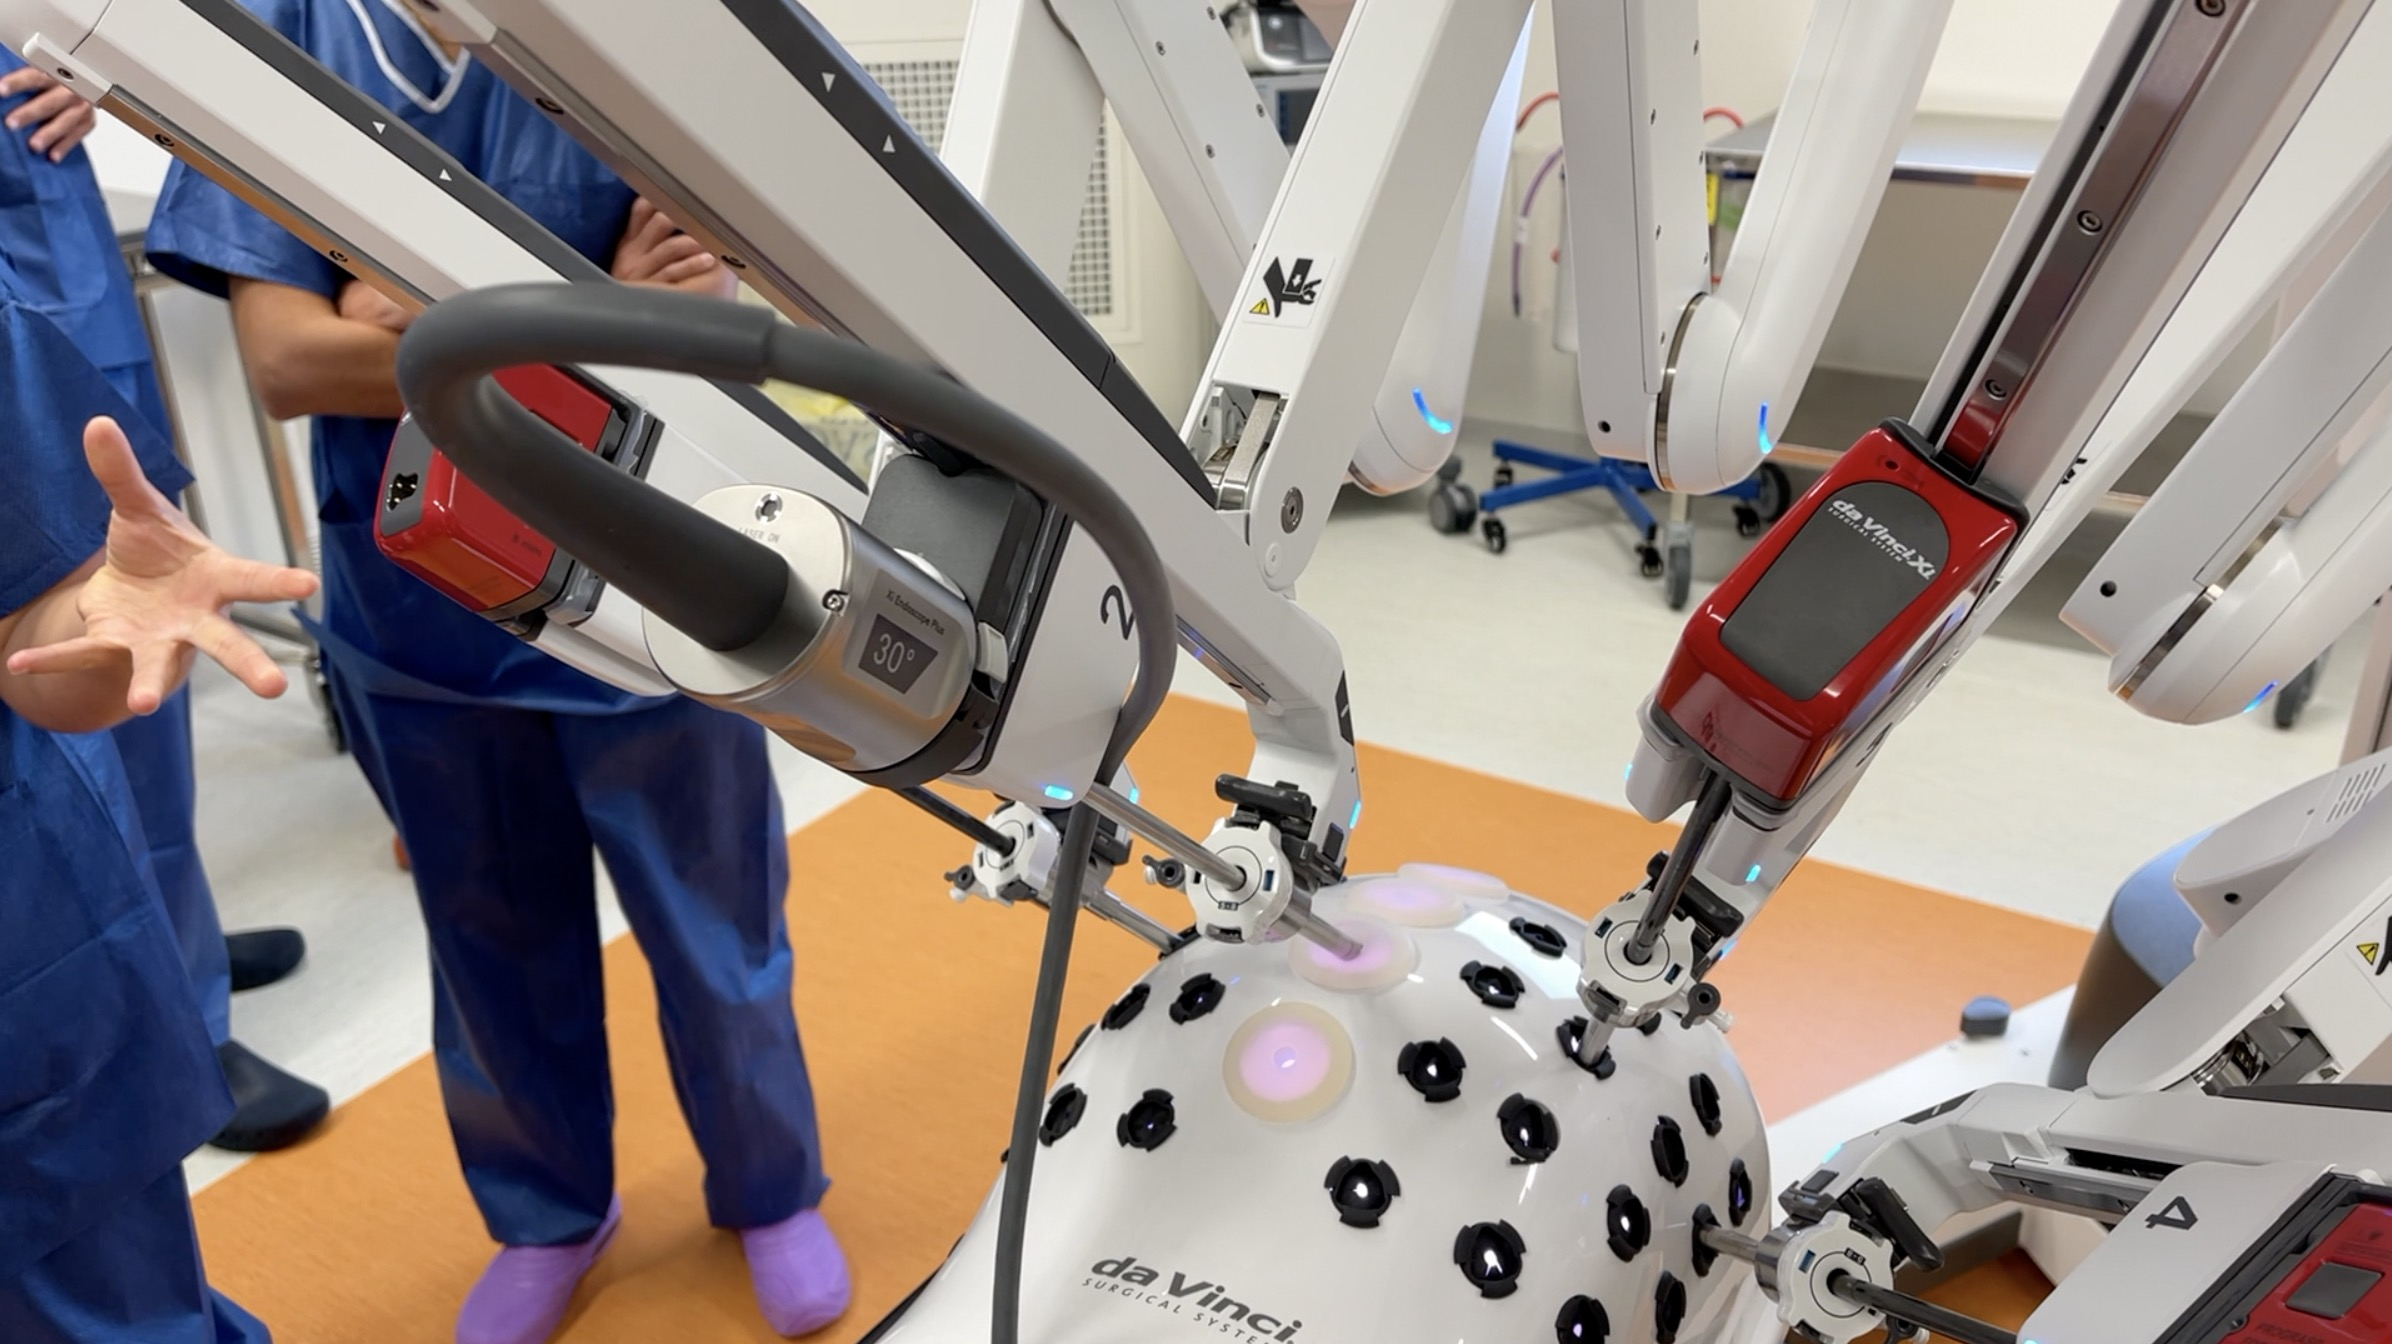 La chirurgie robot-assistée arrive à l'Hopital privé des Côtes-d'Armor (Le Télégramme)